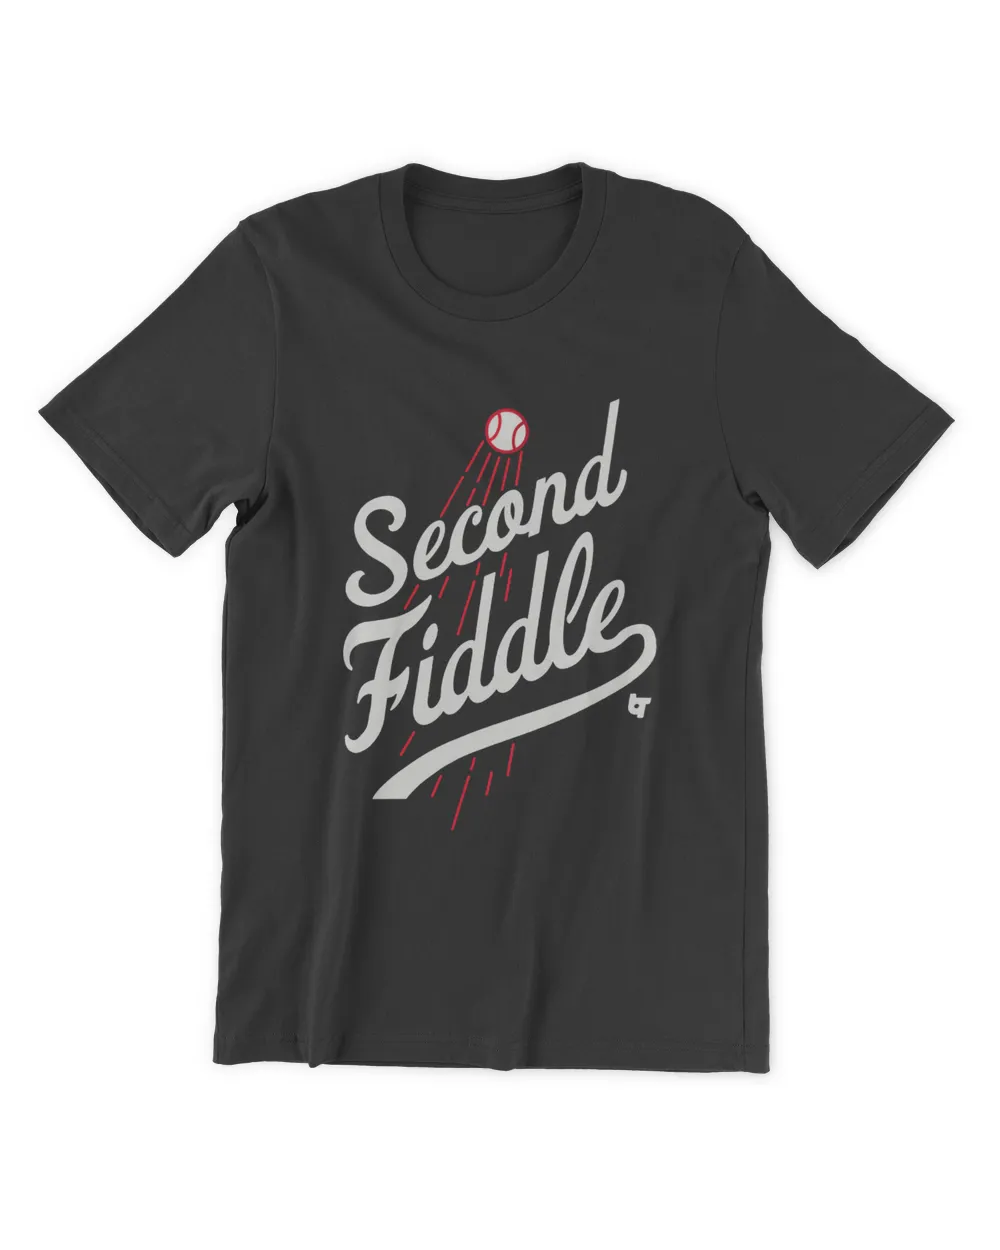 Second Fiddle Shirt